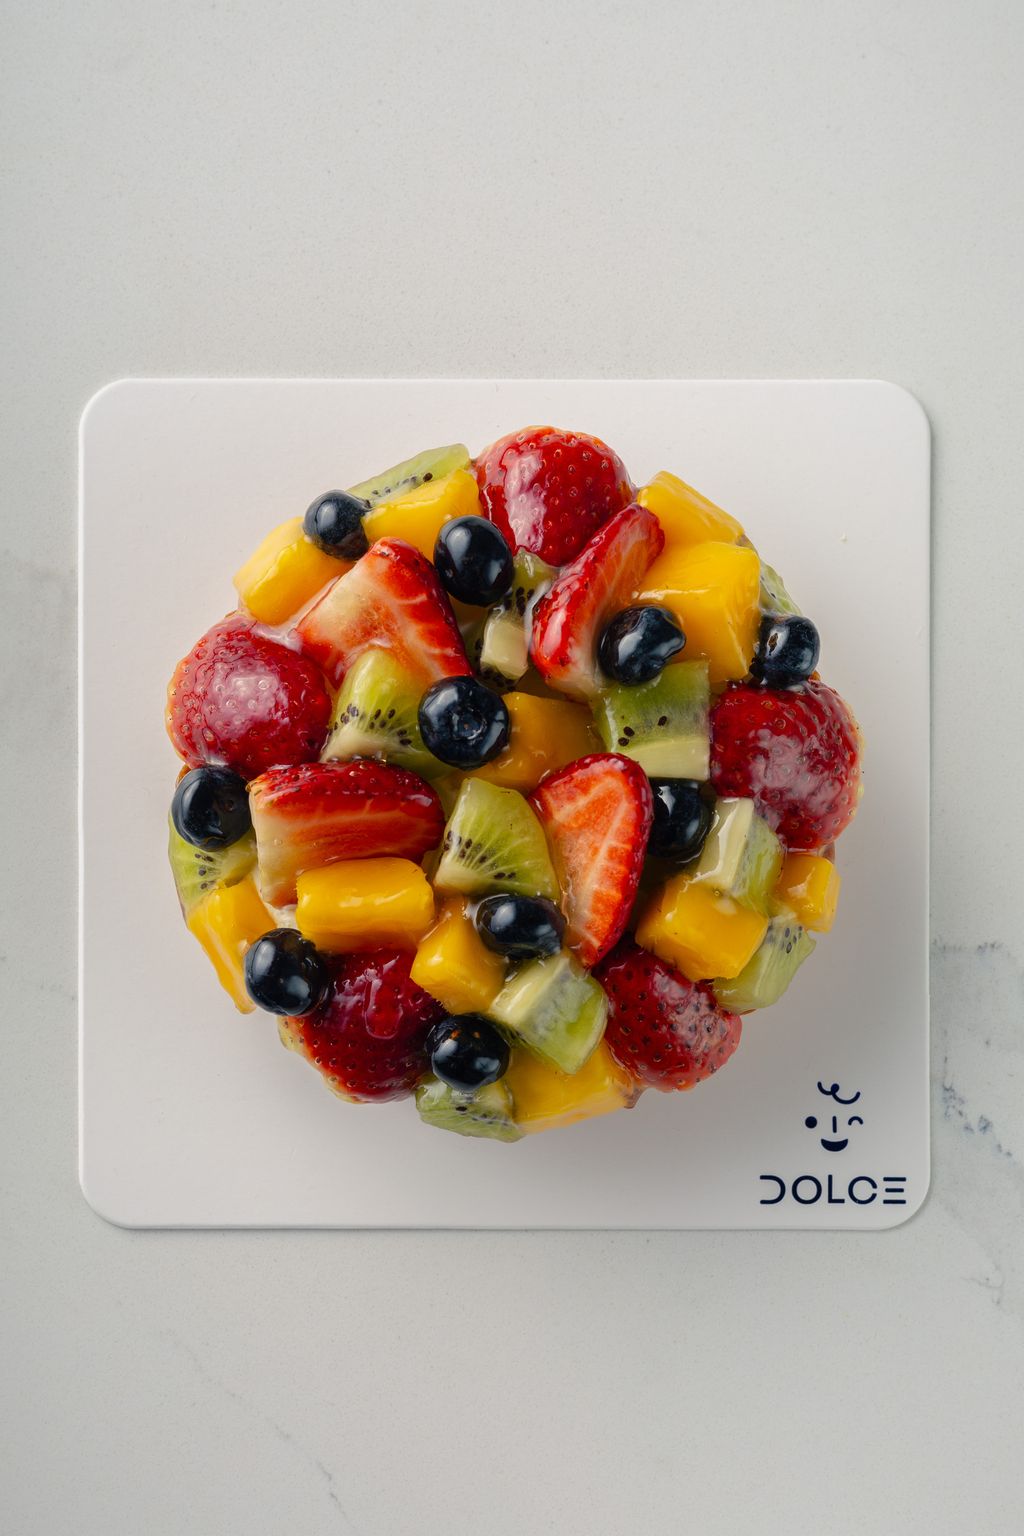 Dolce_Whole Cake-27